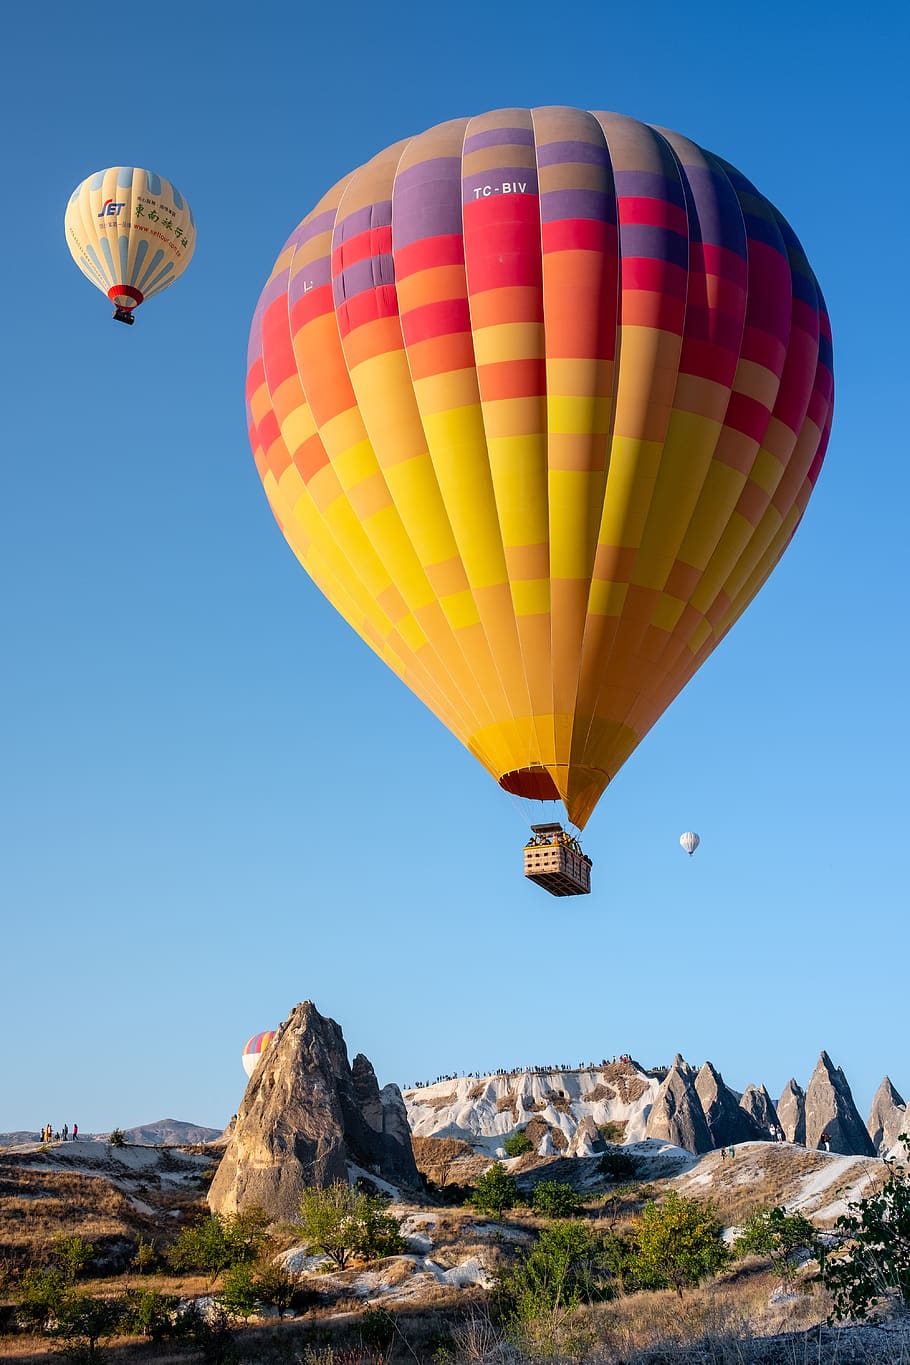 balon udara panas, fajar, matahari terbit, cappadocia, balon, balon udara, angkutan, petualangan, kendaraan udara, langit